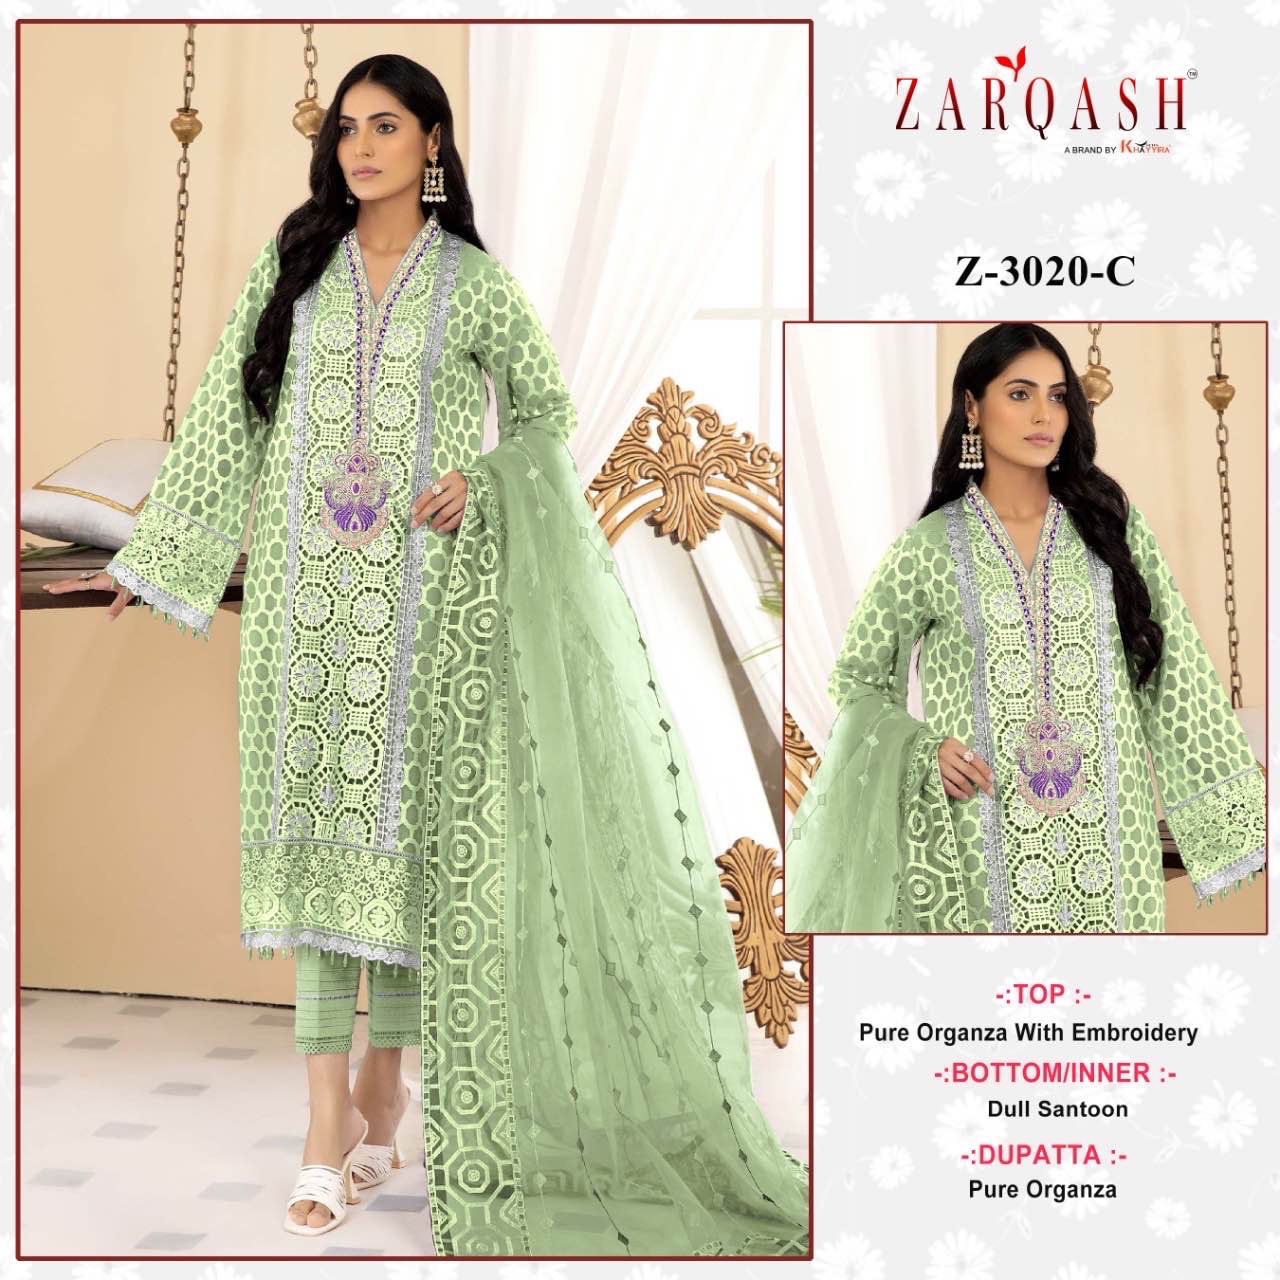 Zarqash Suits Z-3020-C